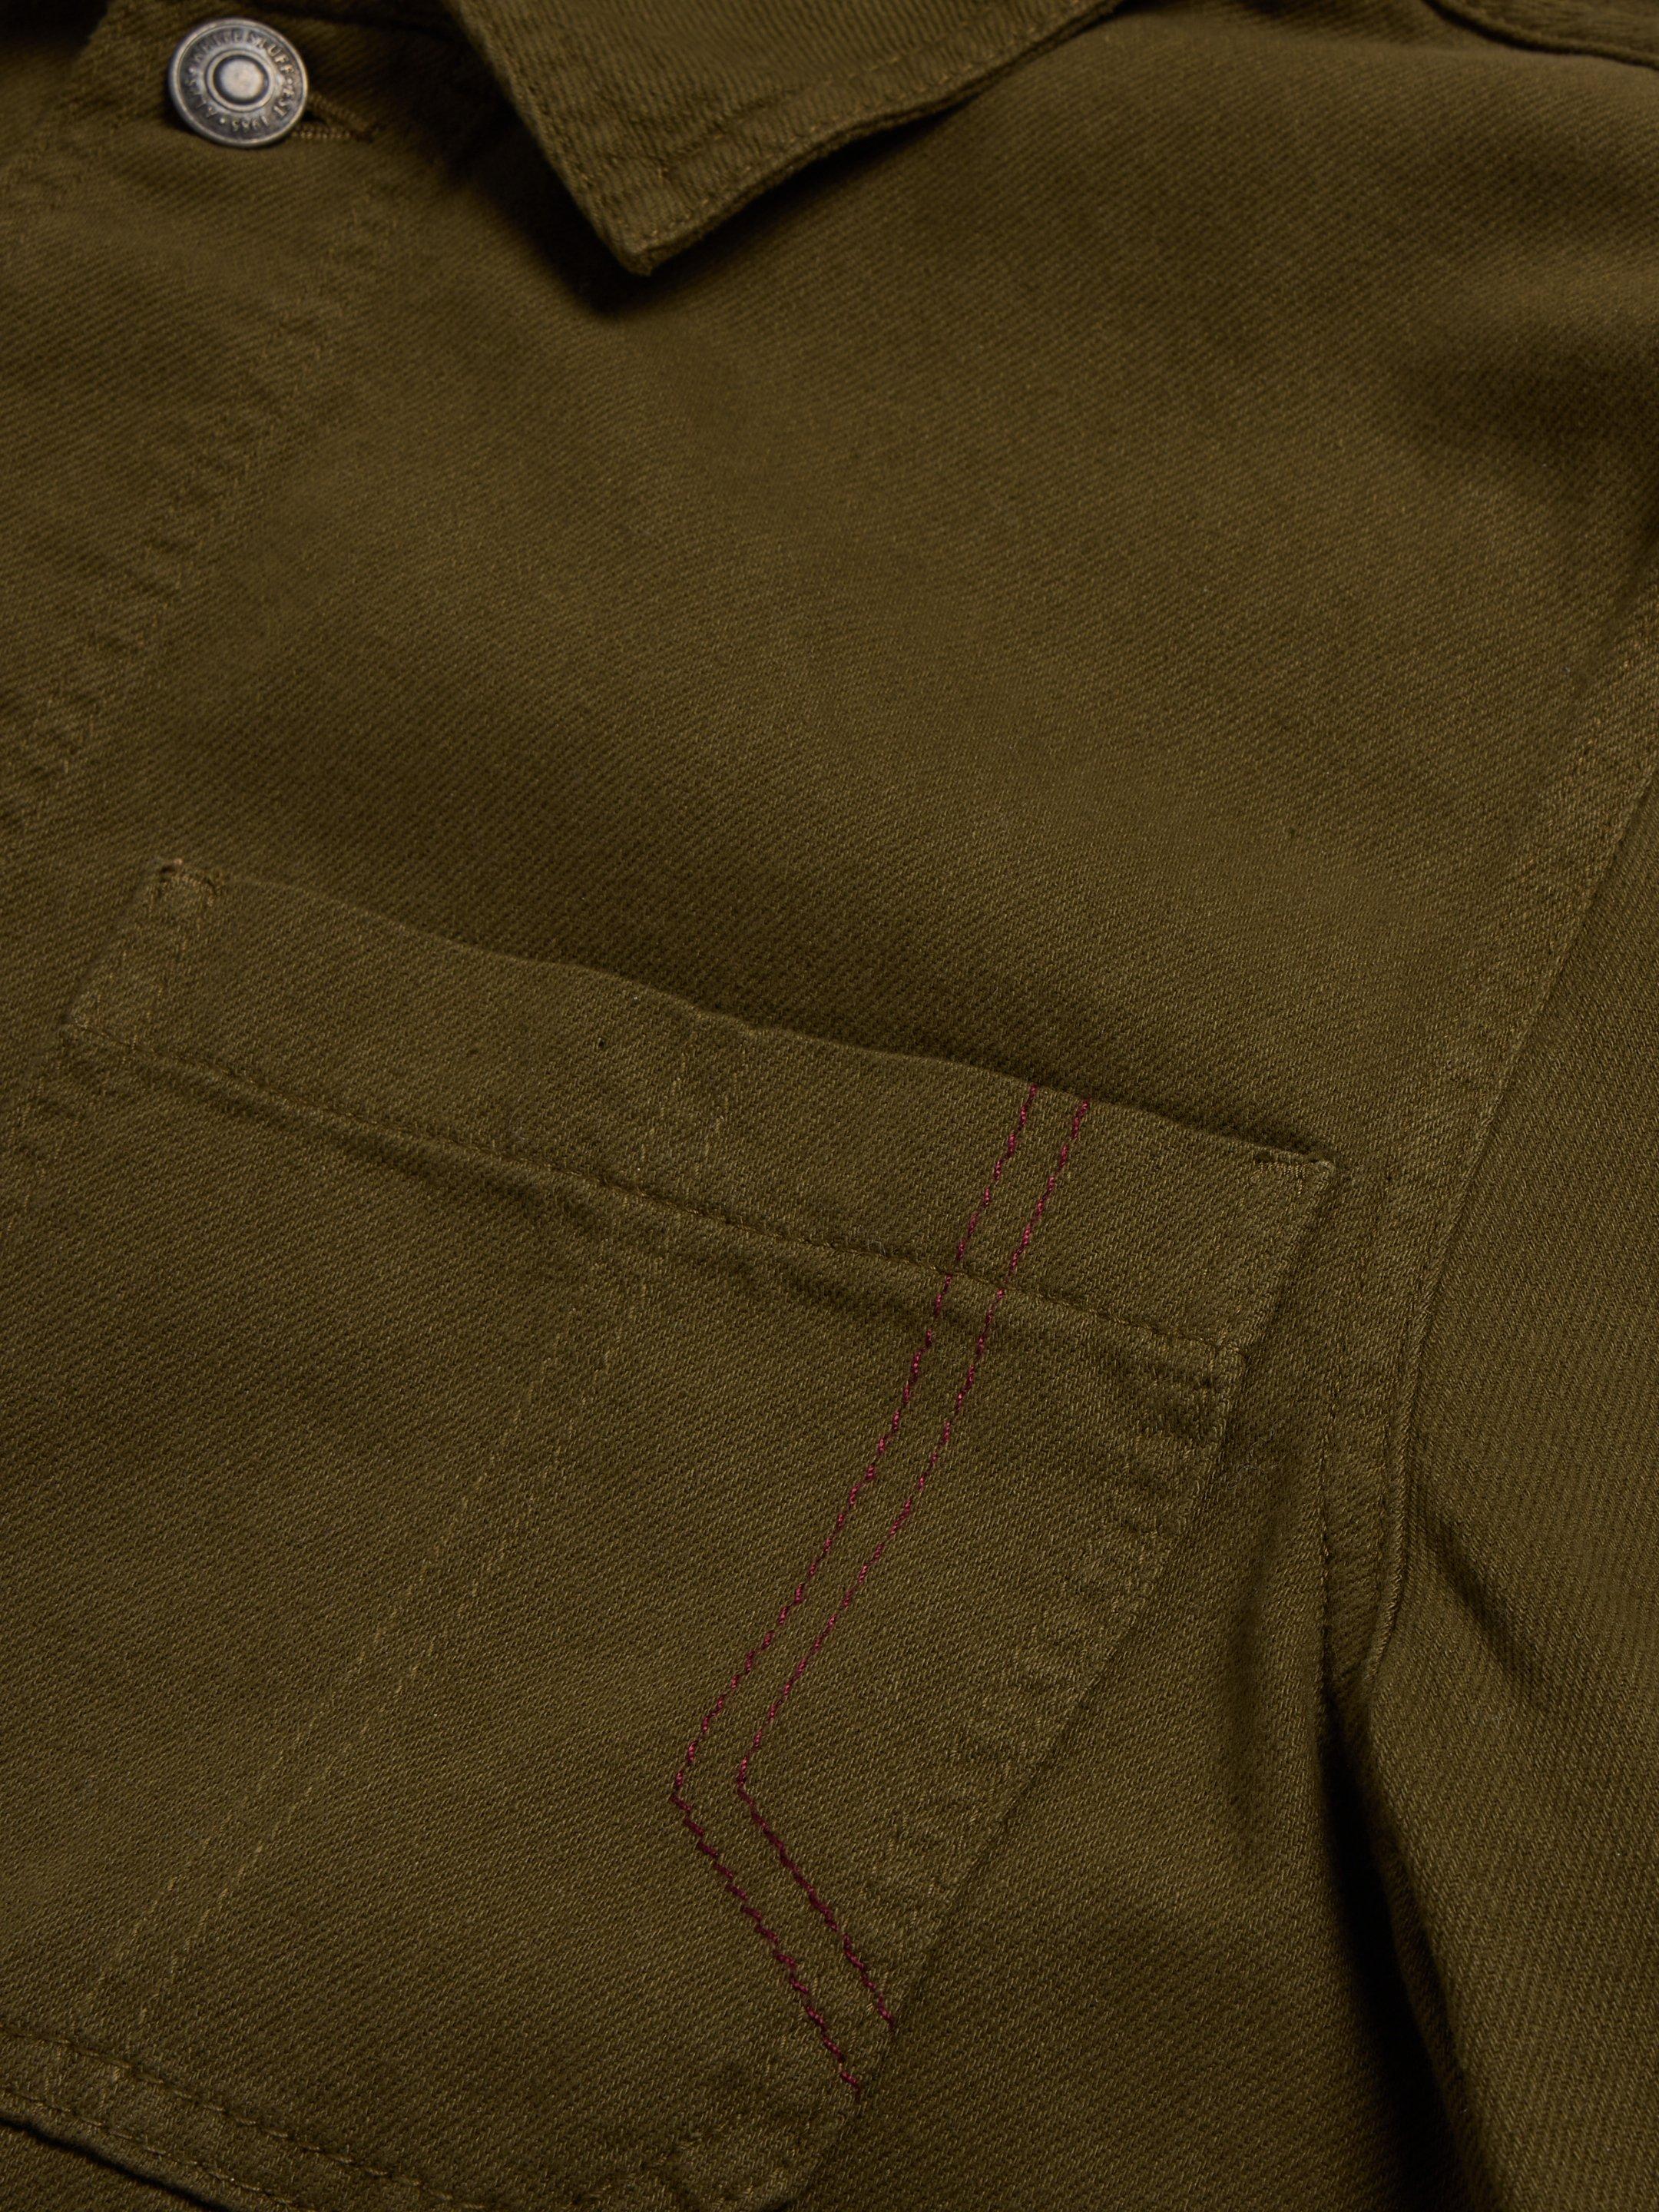 Kynman Workwear Jacket in KHAKI GRN - FLAT DETAIL